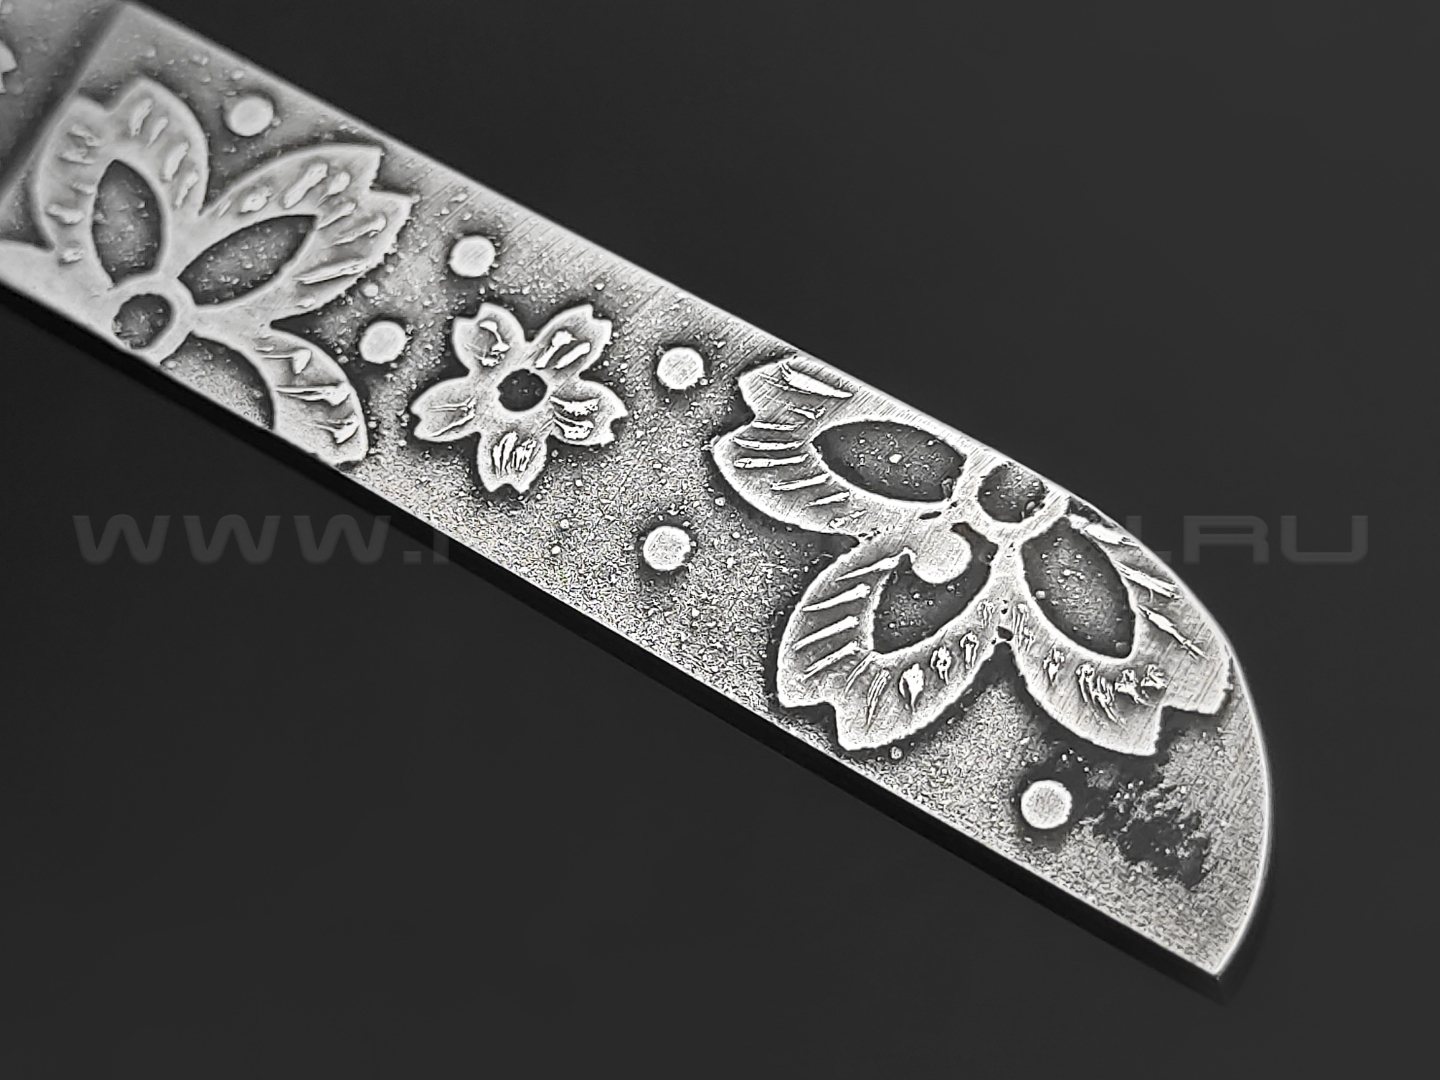 Волчий Век скелетный нож Сакура сталь Bohler N690 WA, рукоять сталь